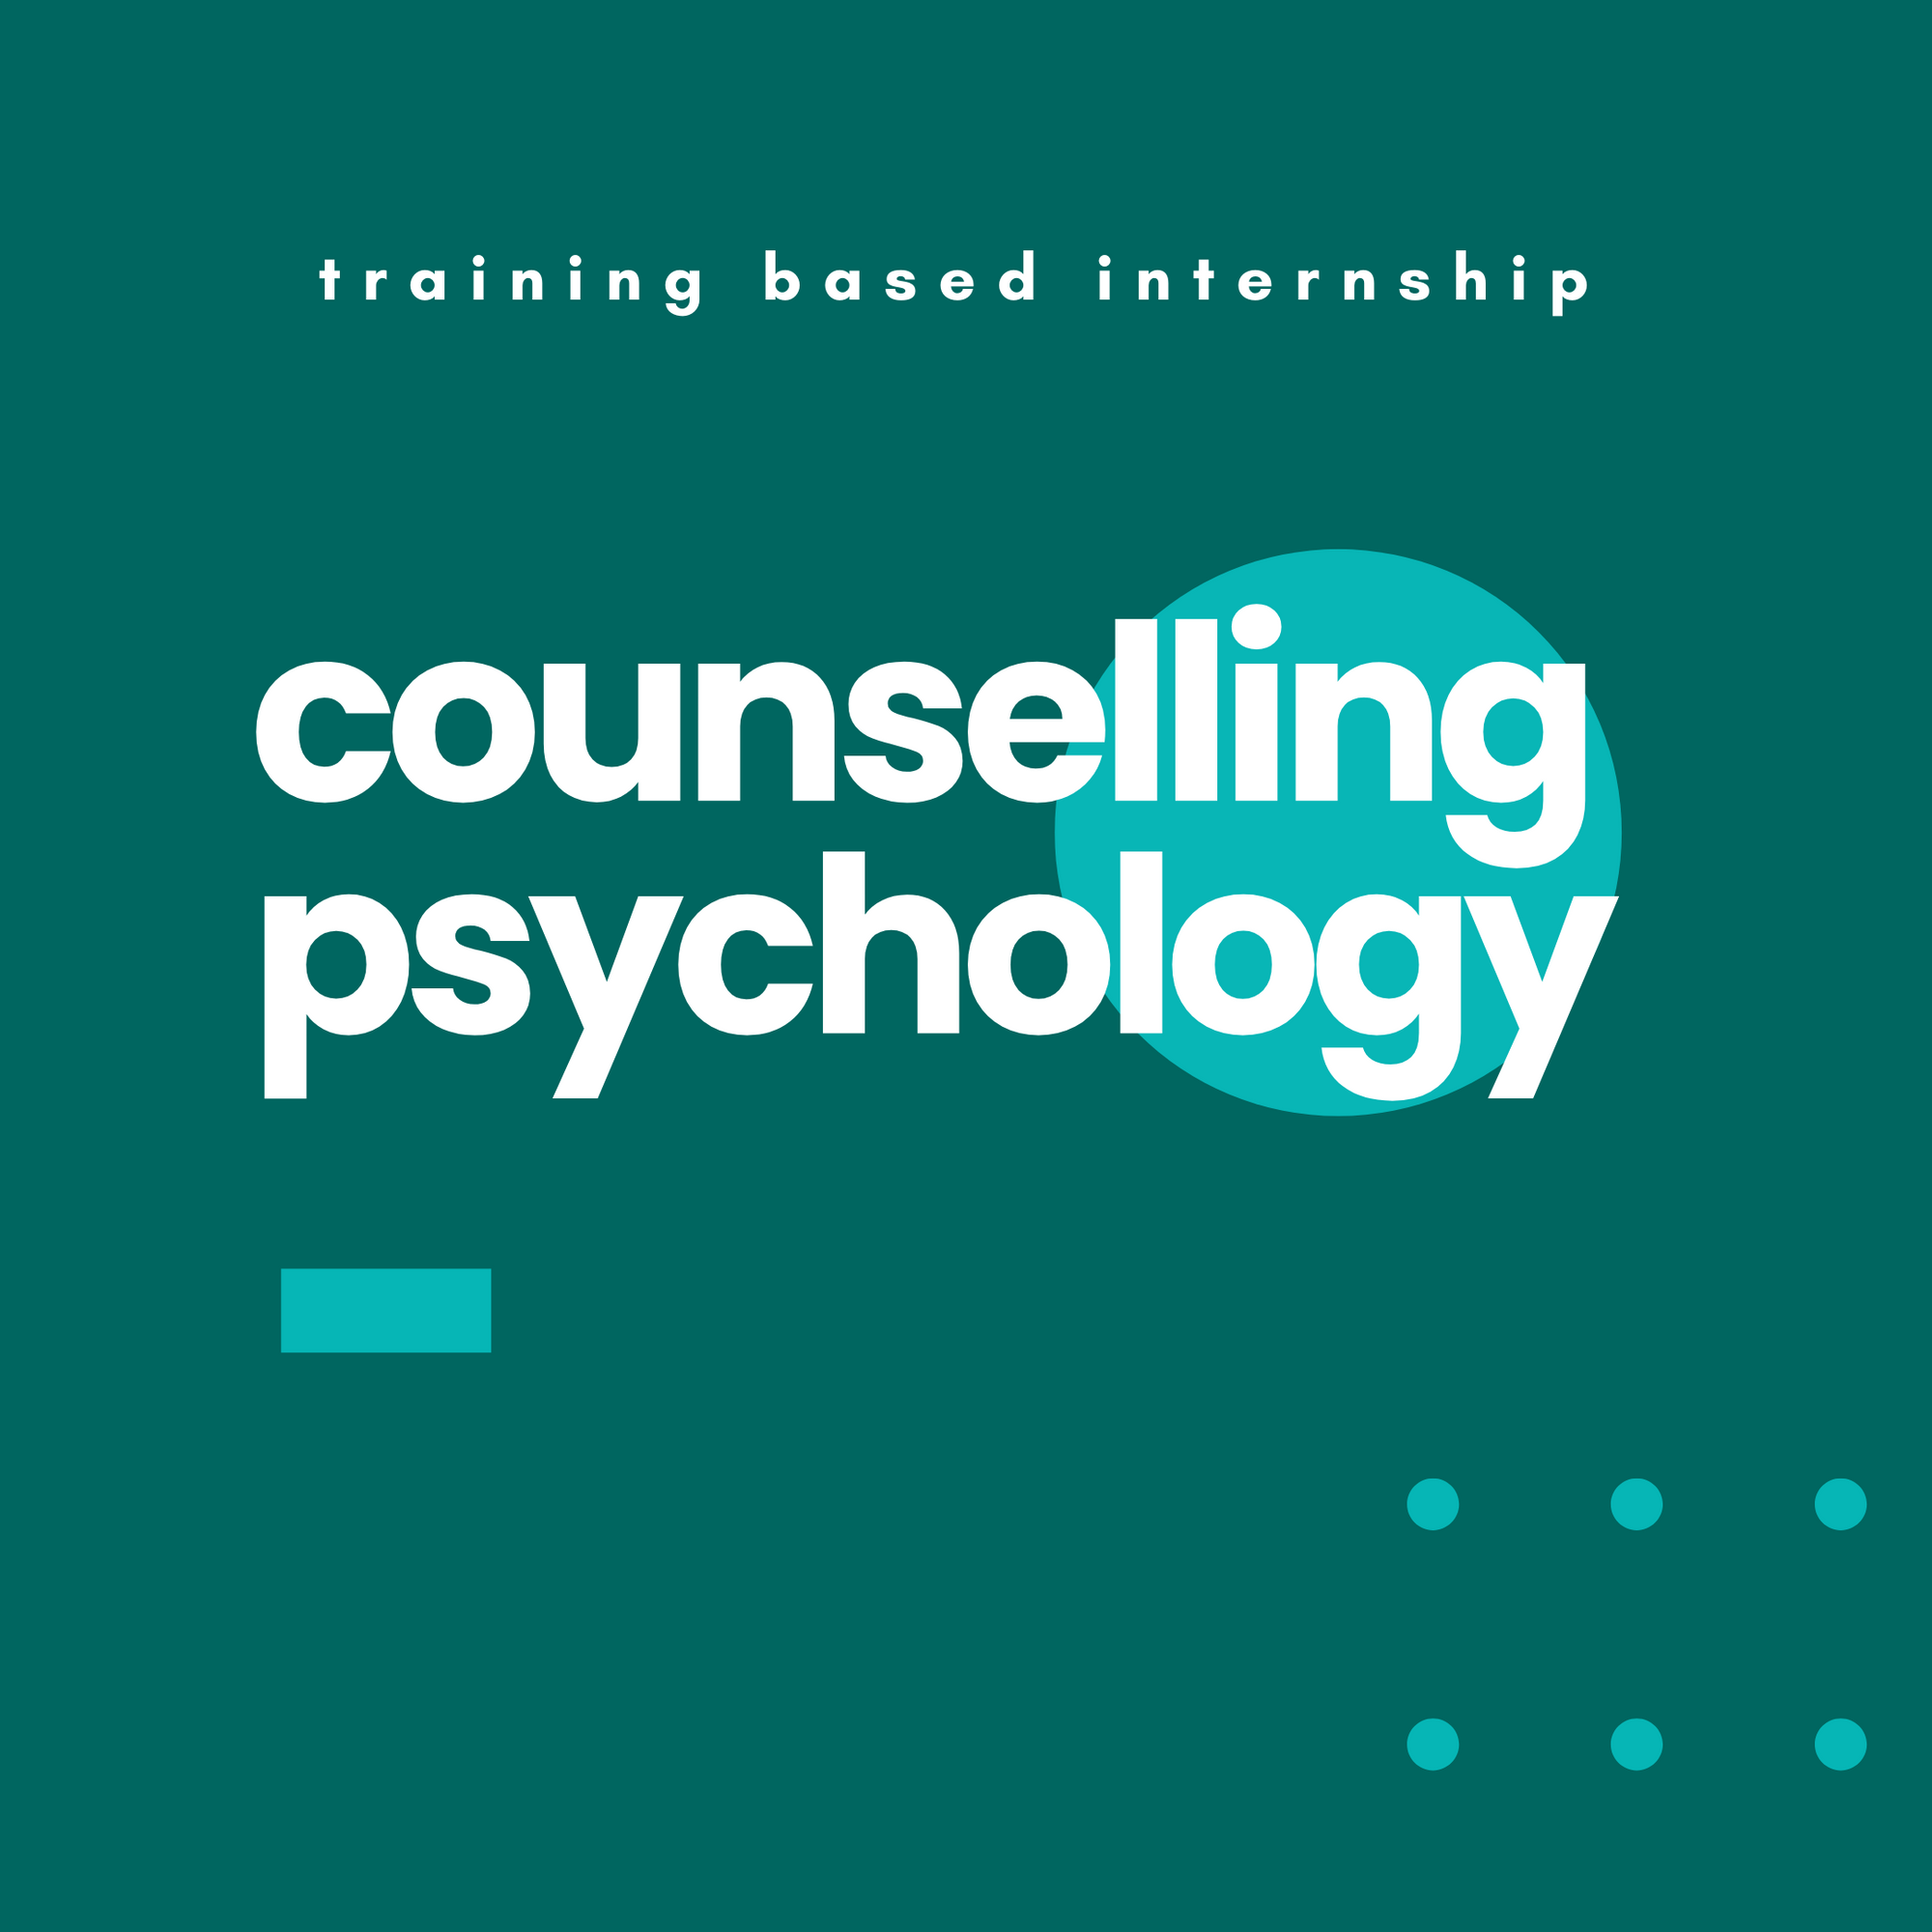 Counselling Psychology Training Based Internship